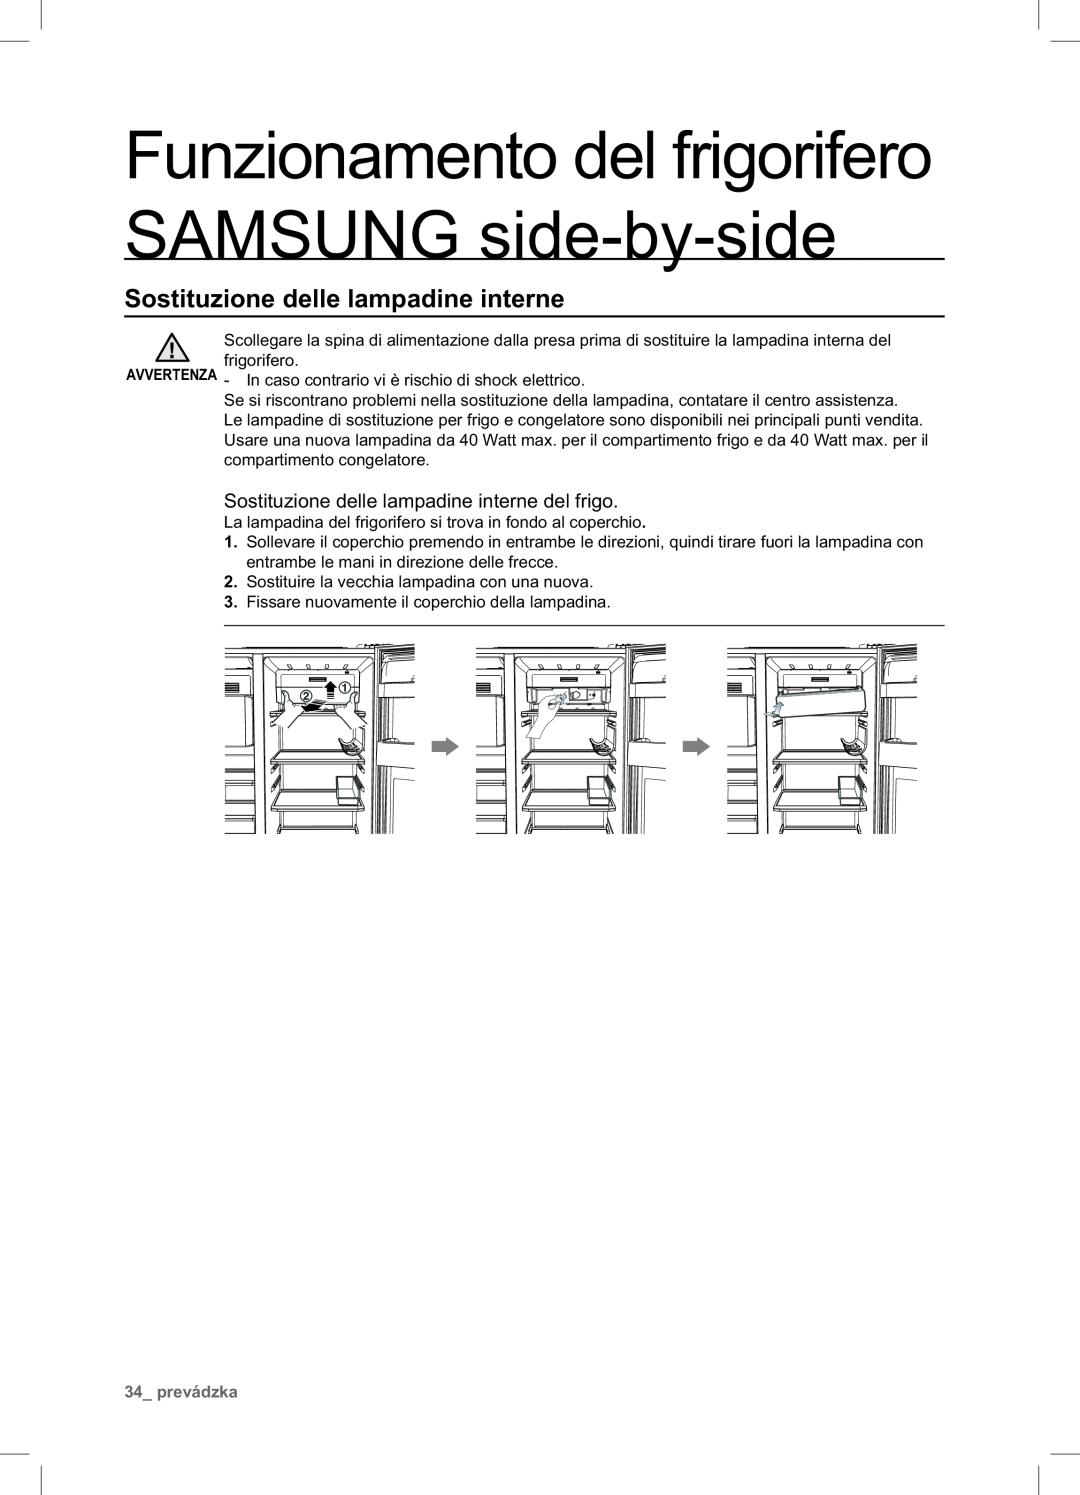 Samsung RSA1NTPE1/XES Sostituzione delle lampadine interne, Funzionamento del frigorifero SAMSUNG side-by-side, prevádzka 